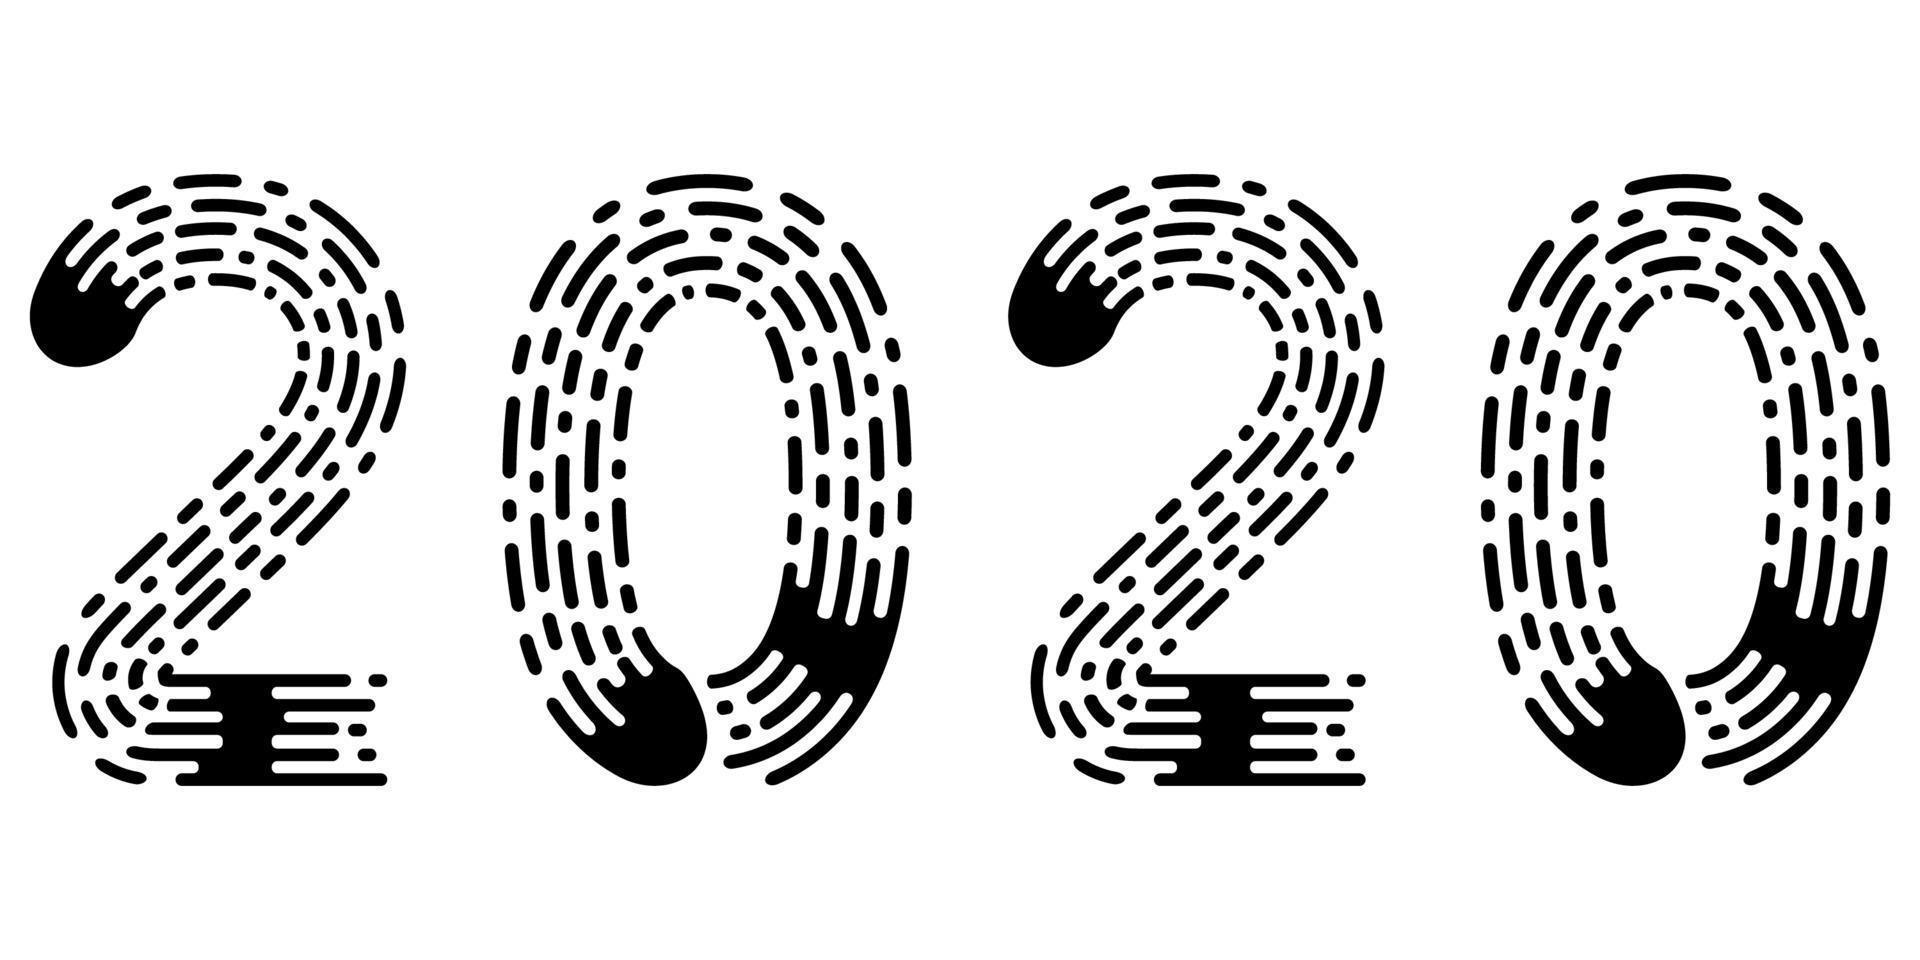 2020 letras figura ano impressão digital estilo Fonte vetor número 2020 Novo ano mão desenhado letras caligrafia vintage sutil grunge